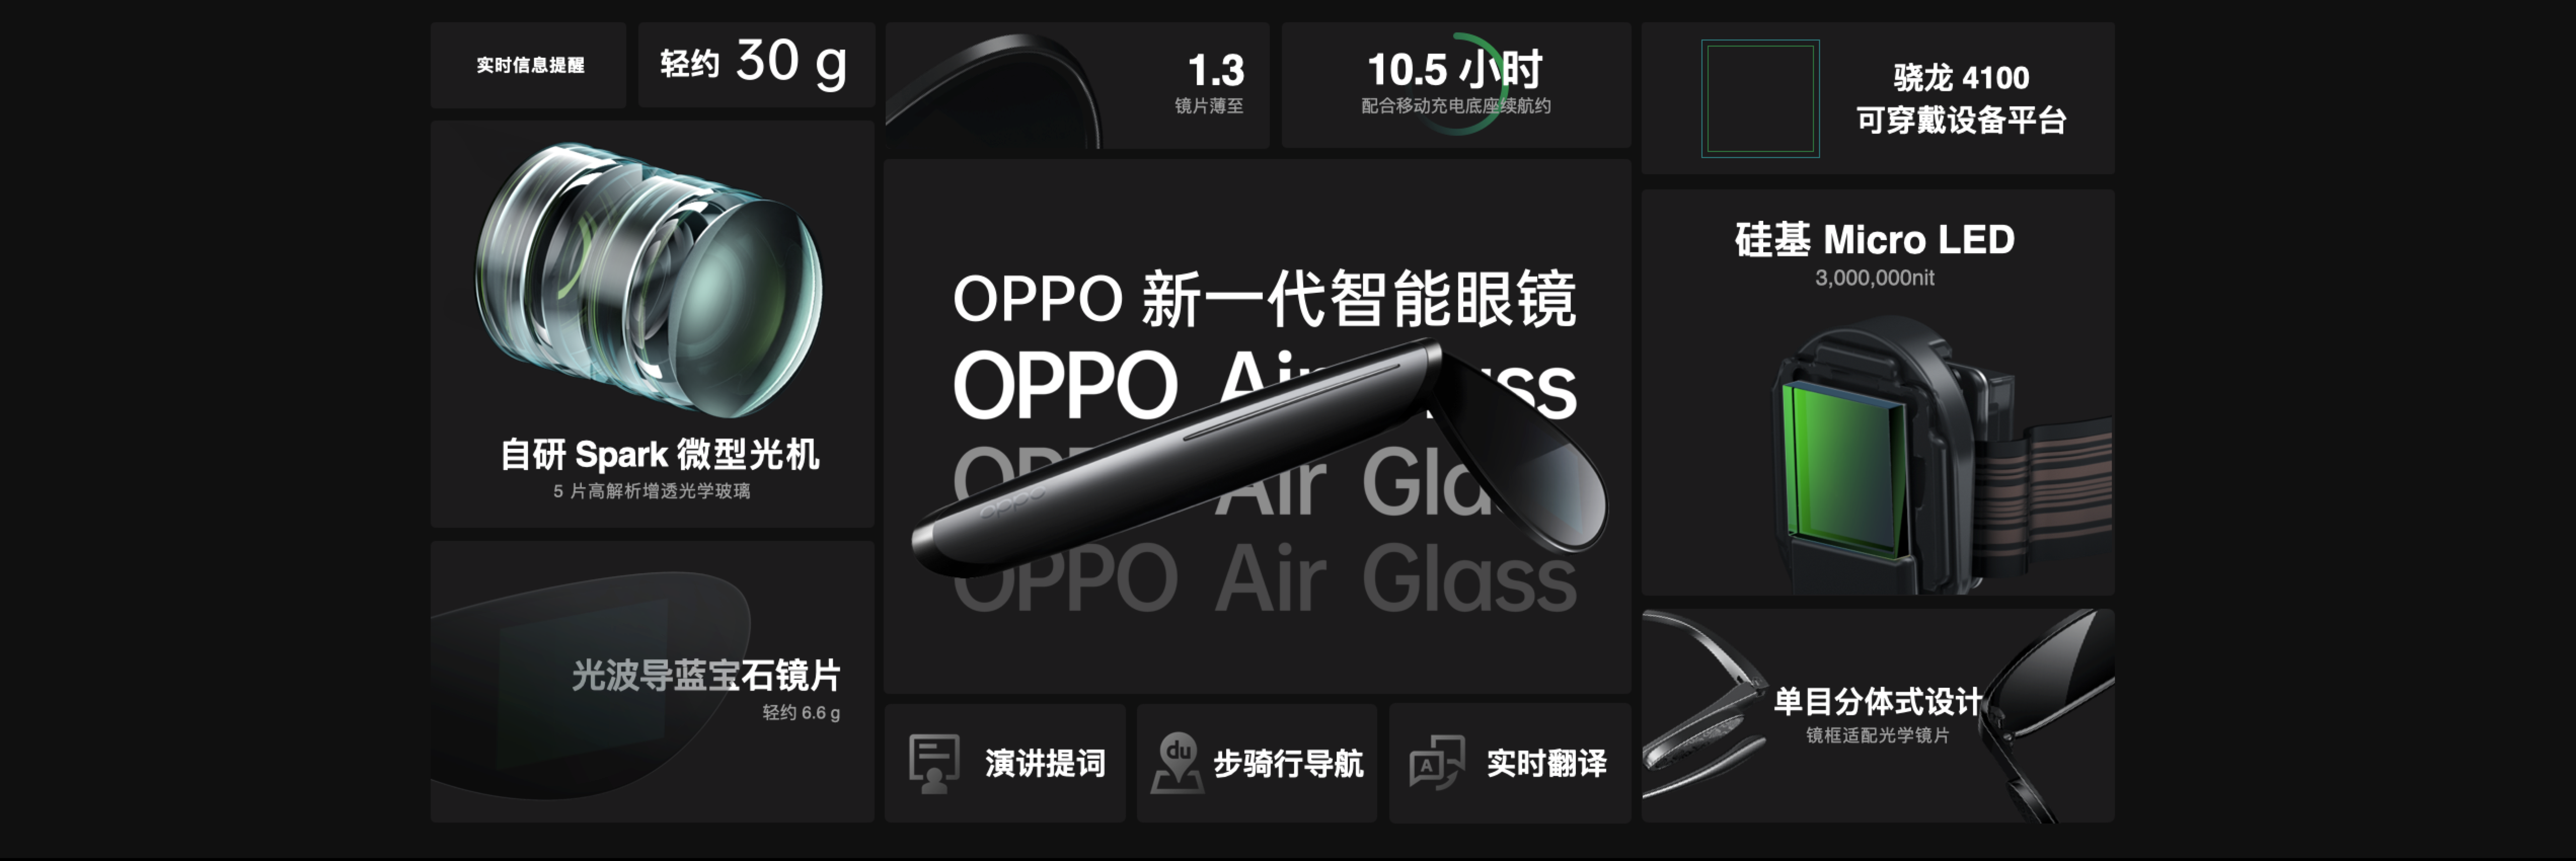 消费级辅助现实工具OPPO Air Glass智能眼镜发布 多项创新技术带来前所未有体验